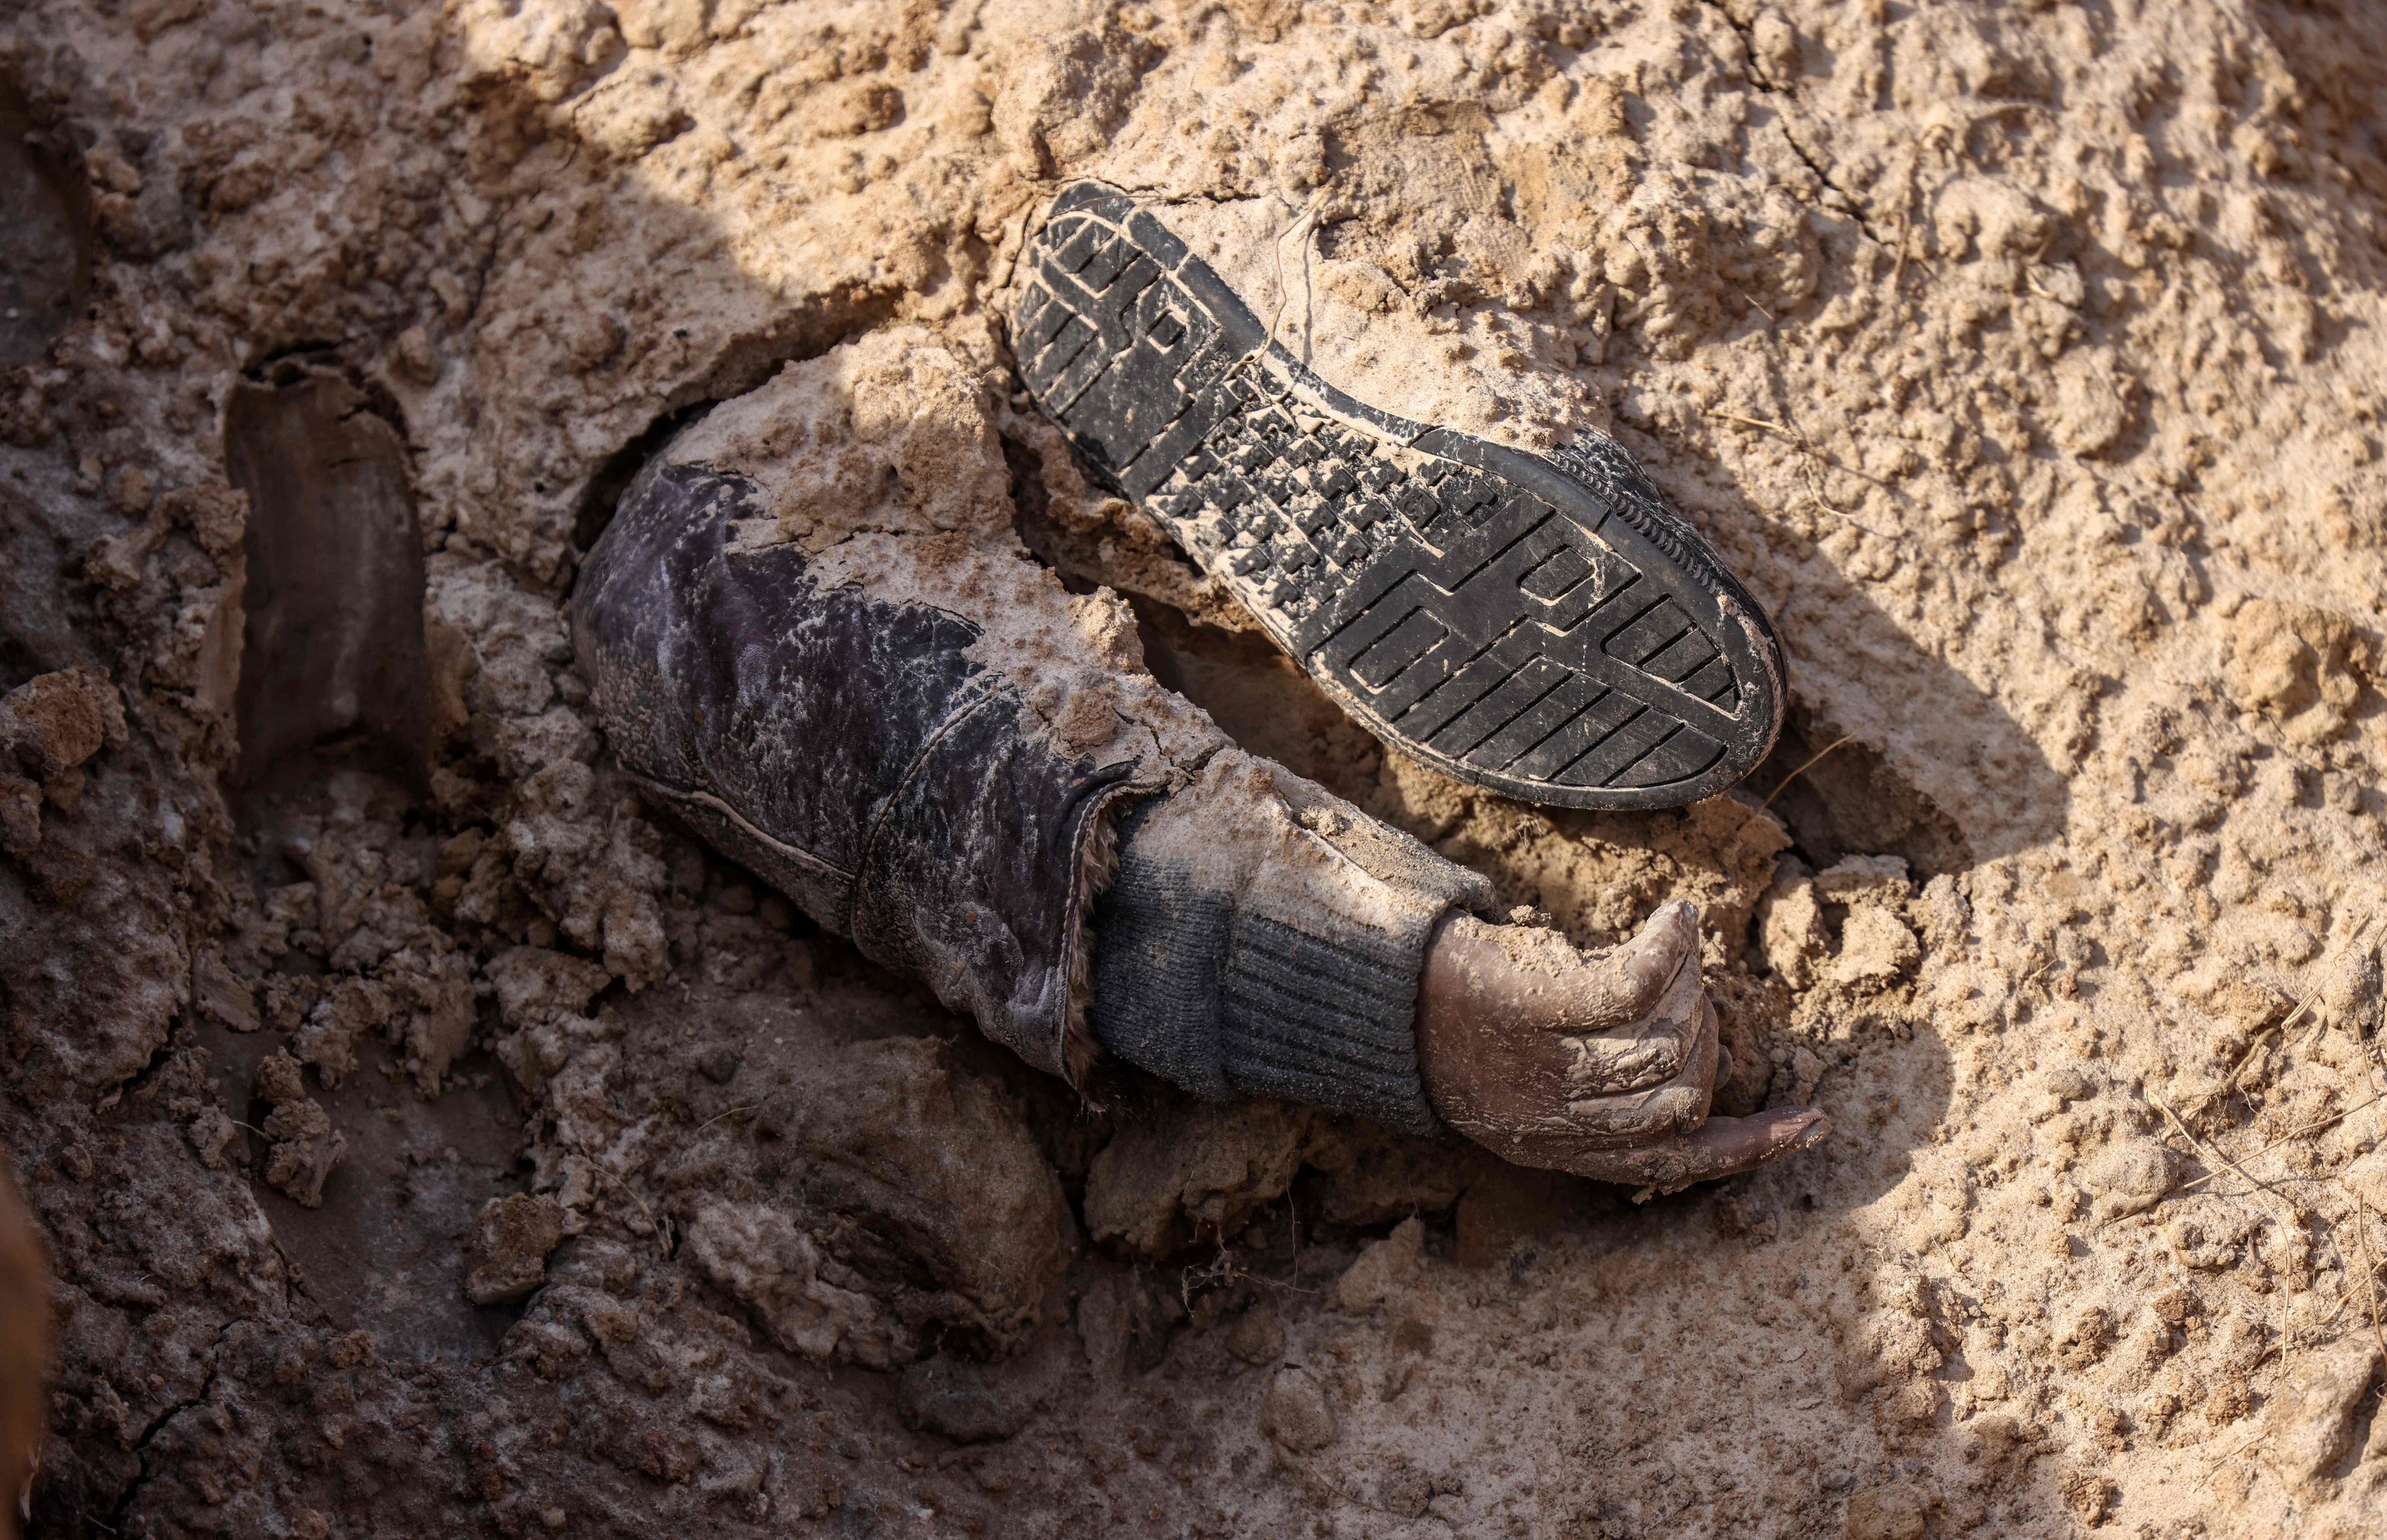 Dedos y brazos rotos, heridas de arma blanca… Las pruebas de los crímenes de guerra en los cuerpos mutilados